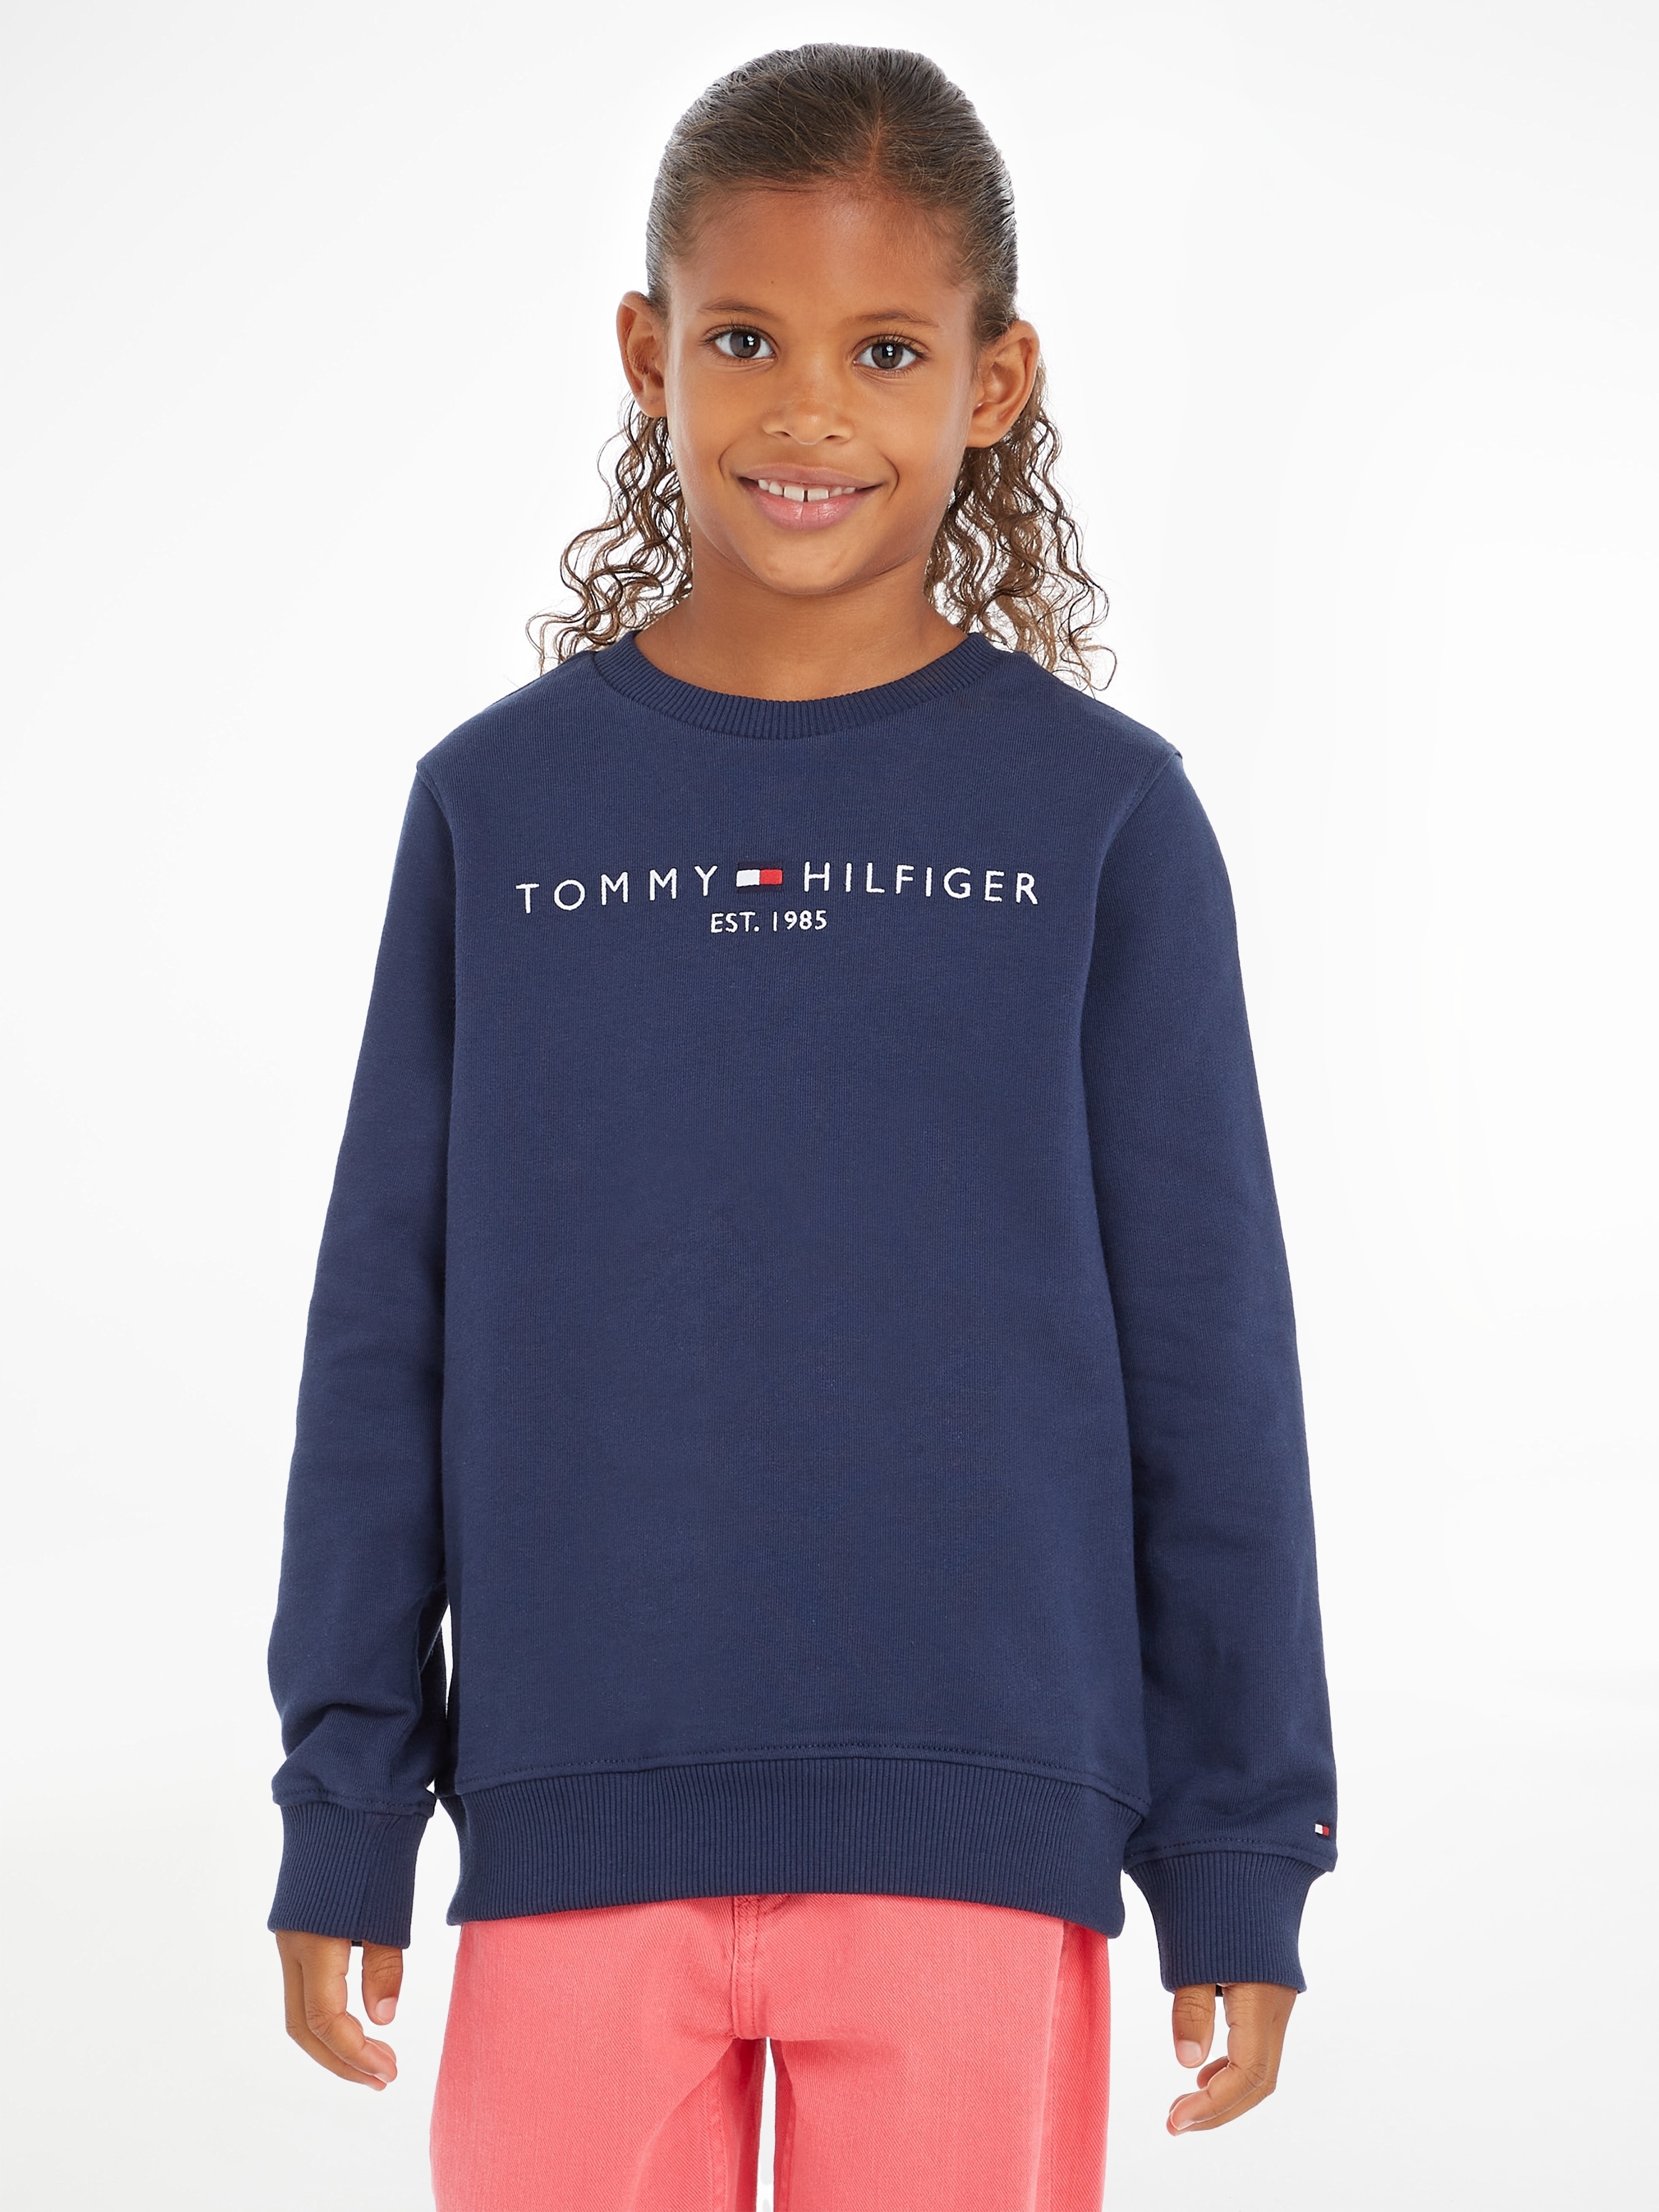 Tommy Hilfiger mit SWEATSHIRT«, Sweatshirt »ESSENTIAL Logo-Schriftzug BAUR kaufen Hilfger | online Tommy